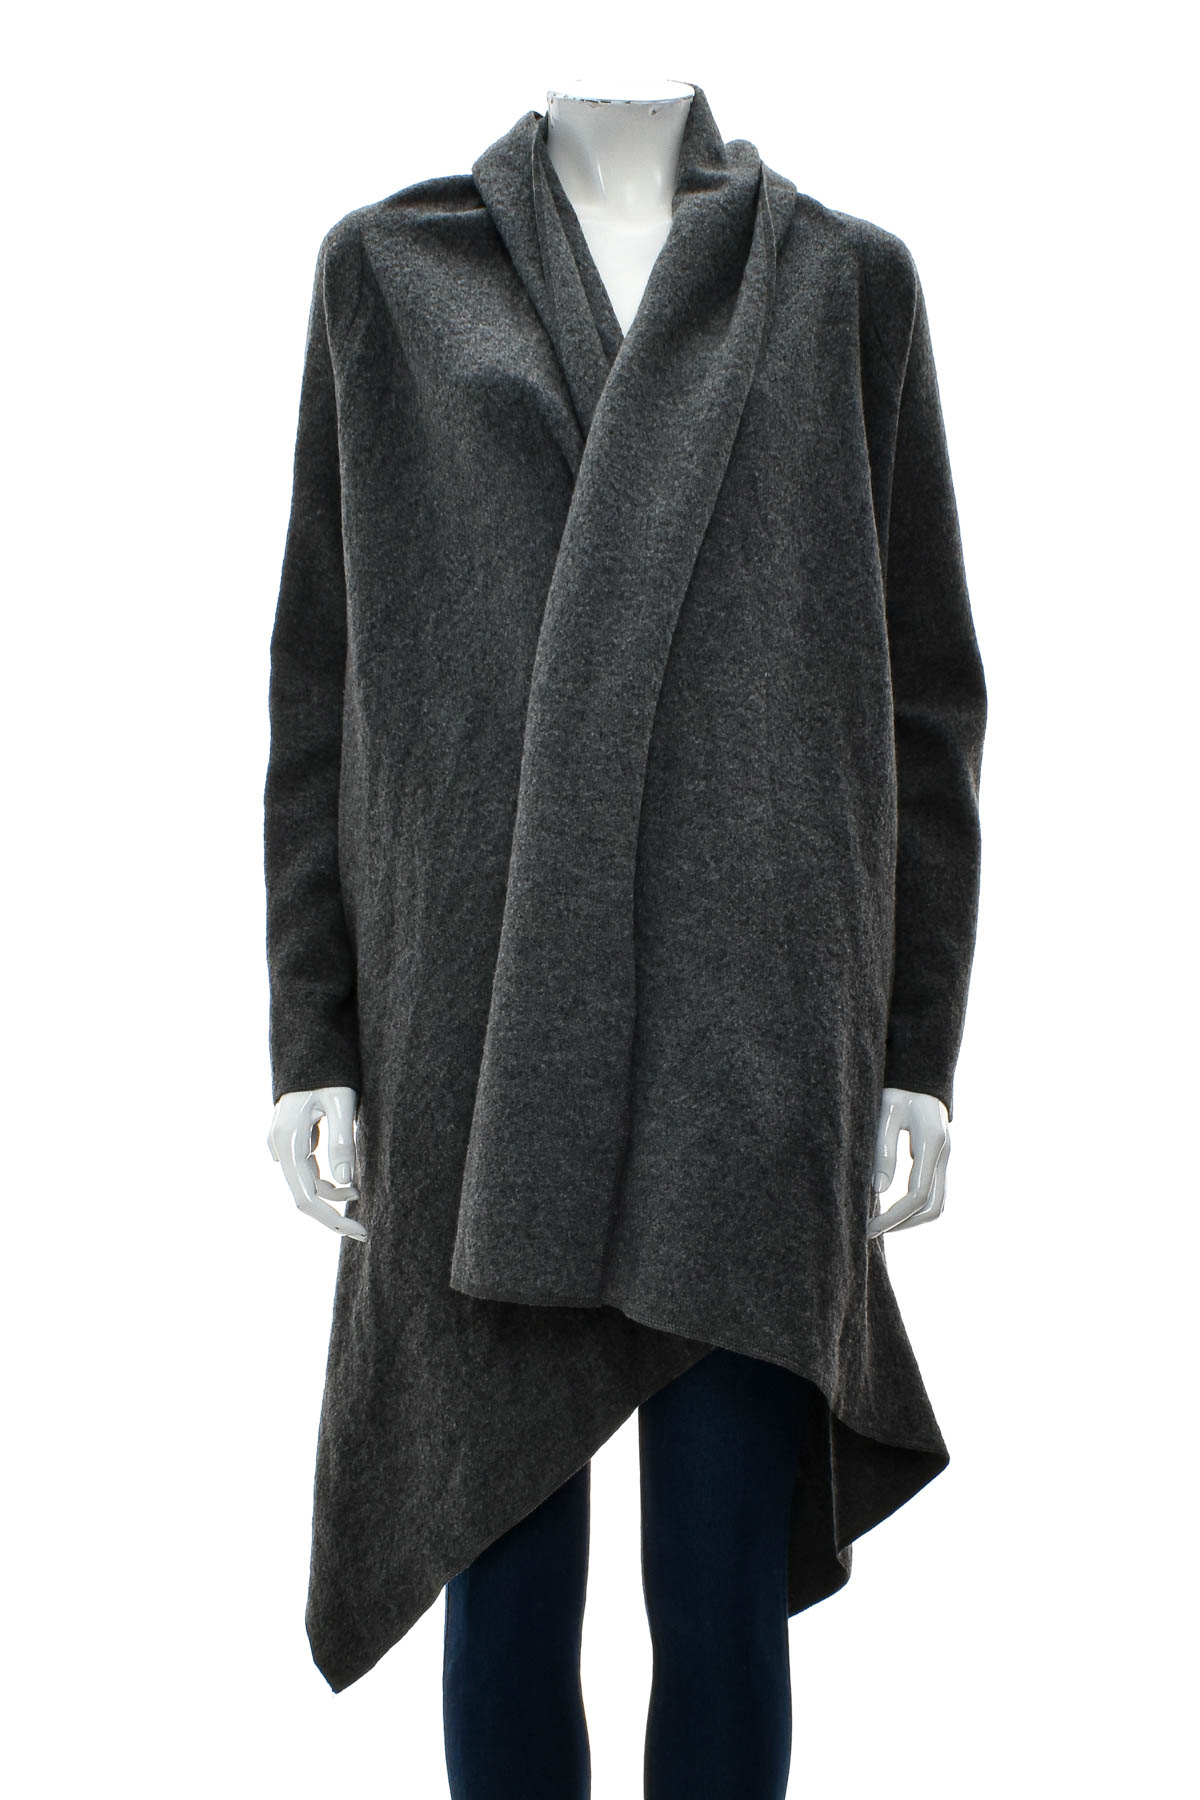 Γυναικείο παλτό - DKNY - 0